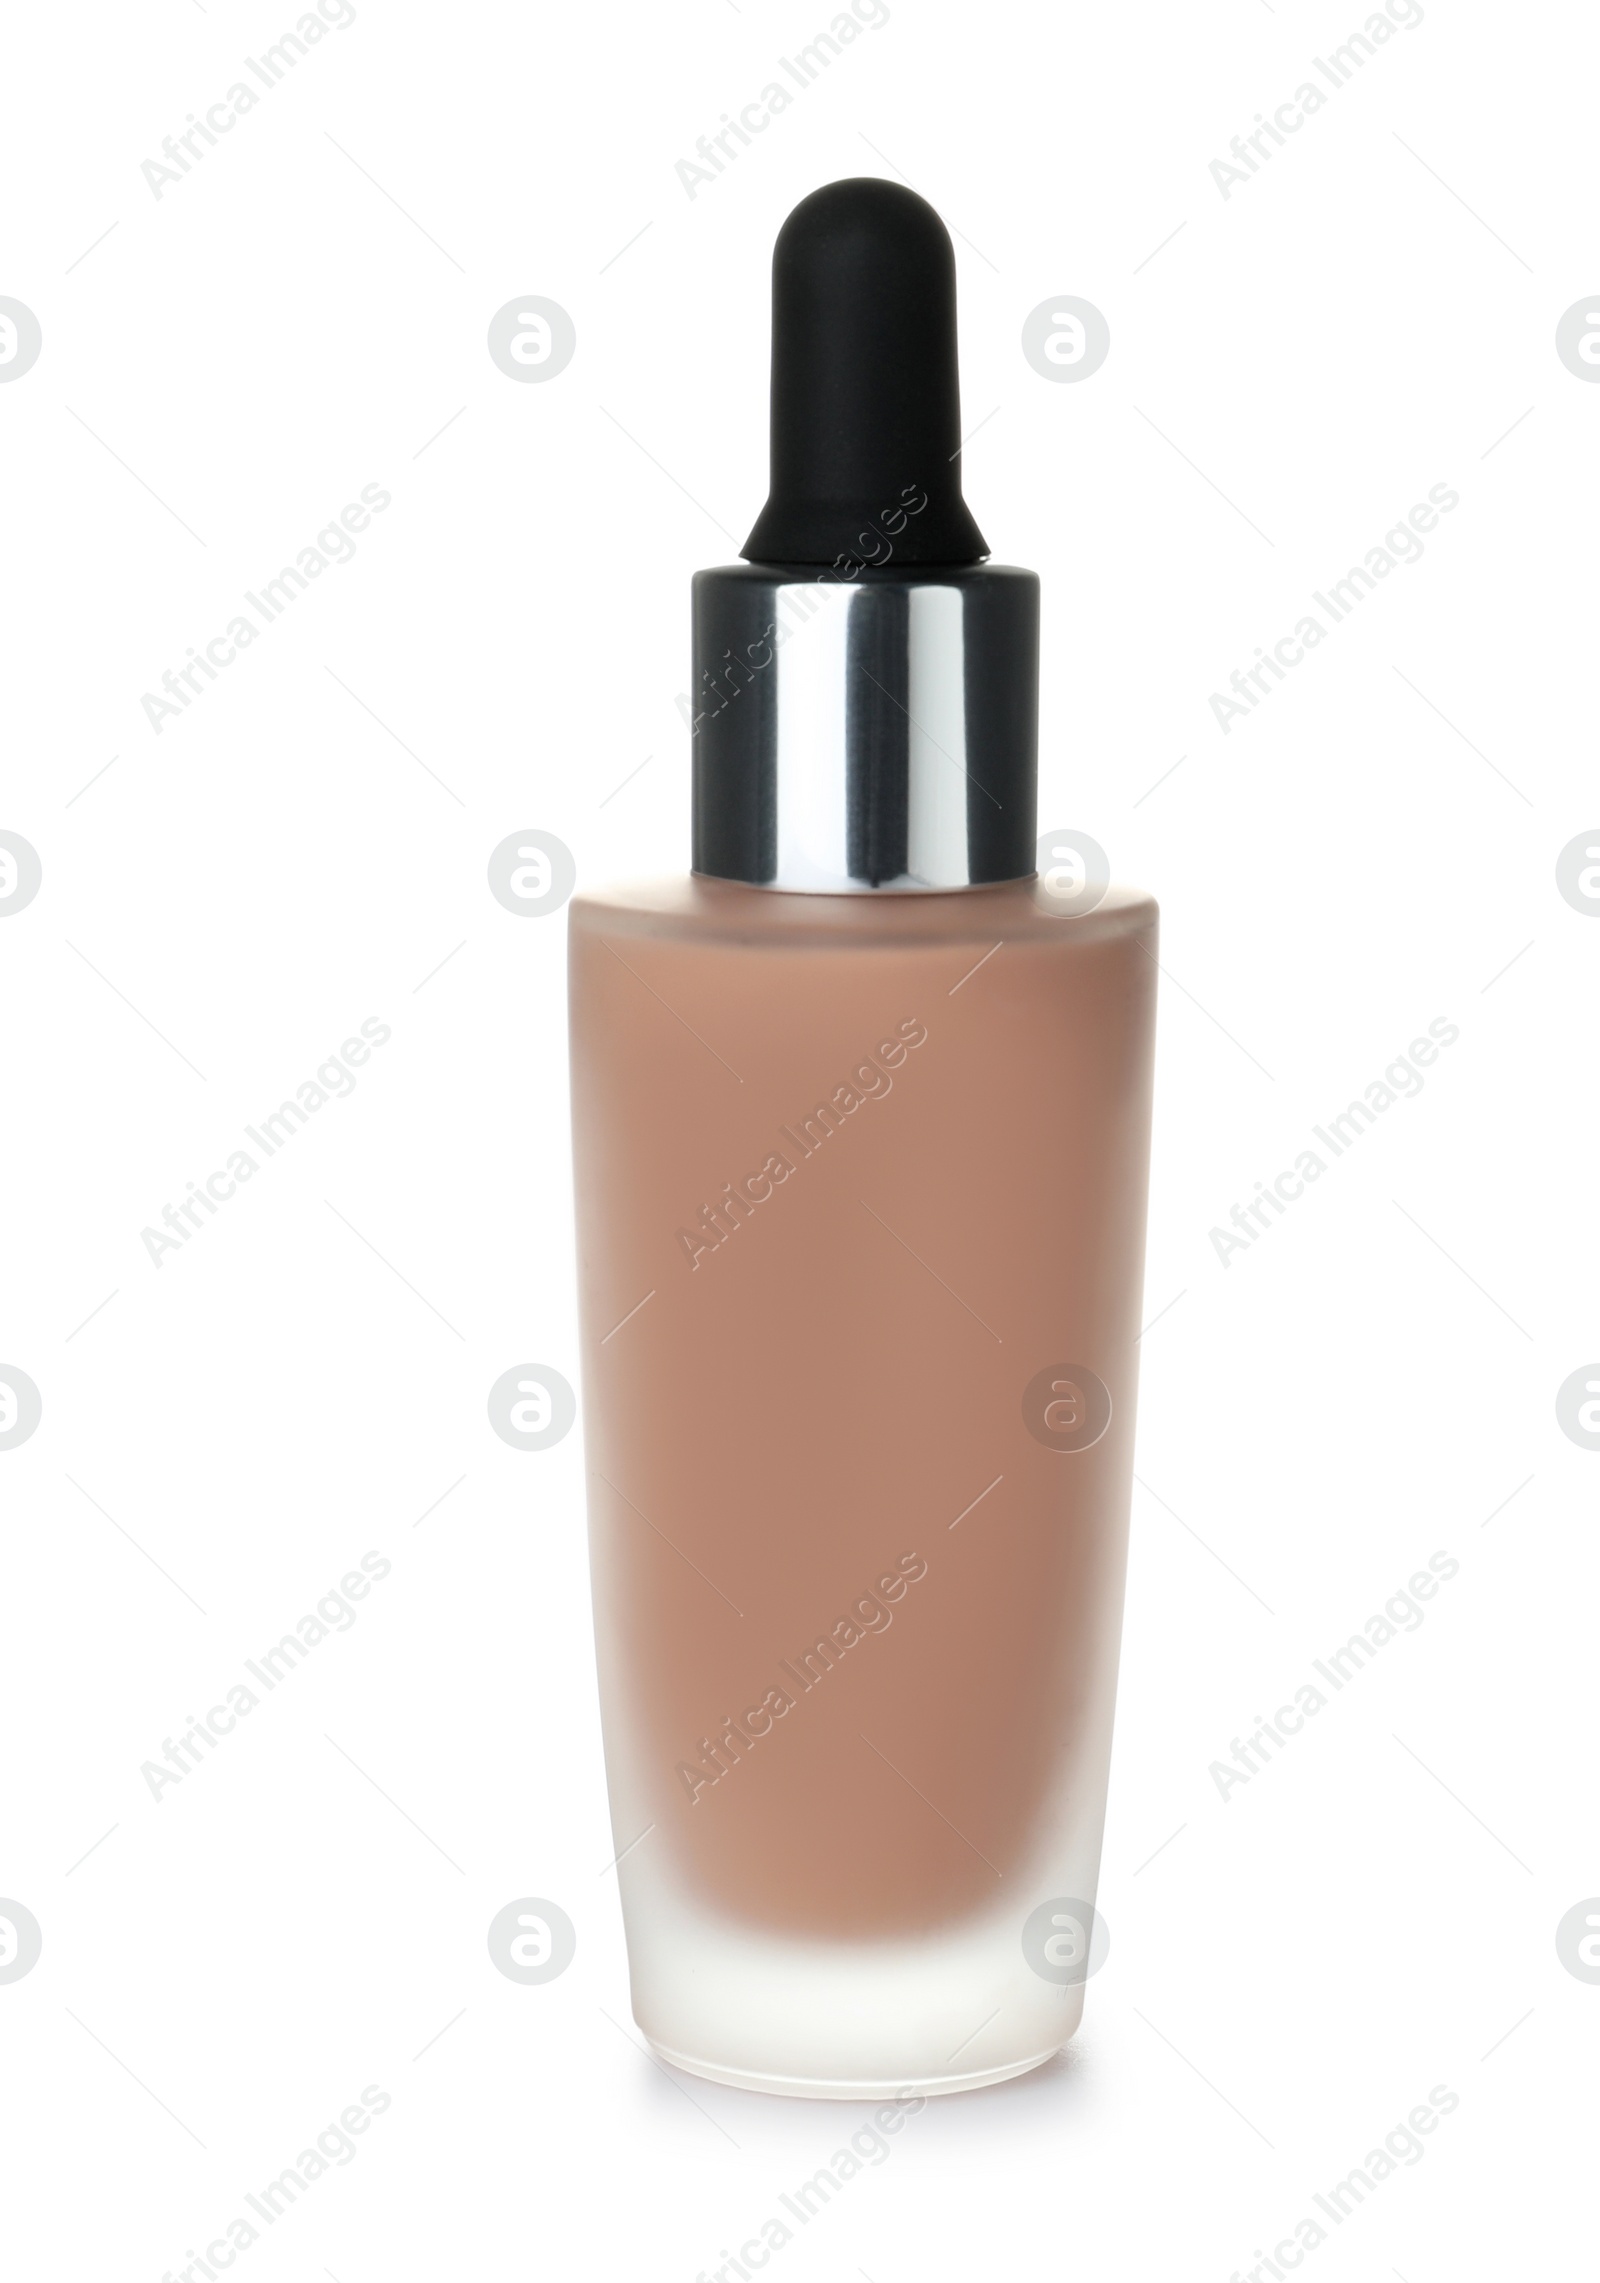 Photo of Bottle of skin foundation on white background